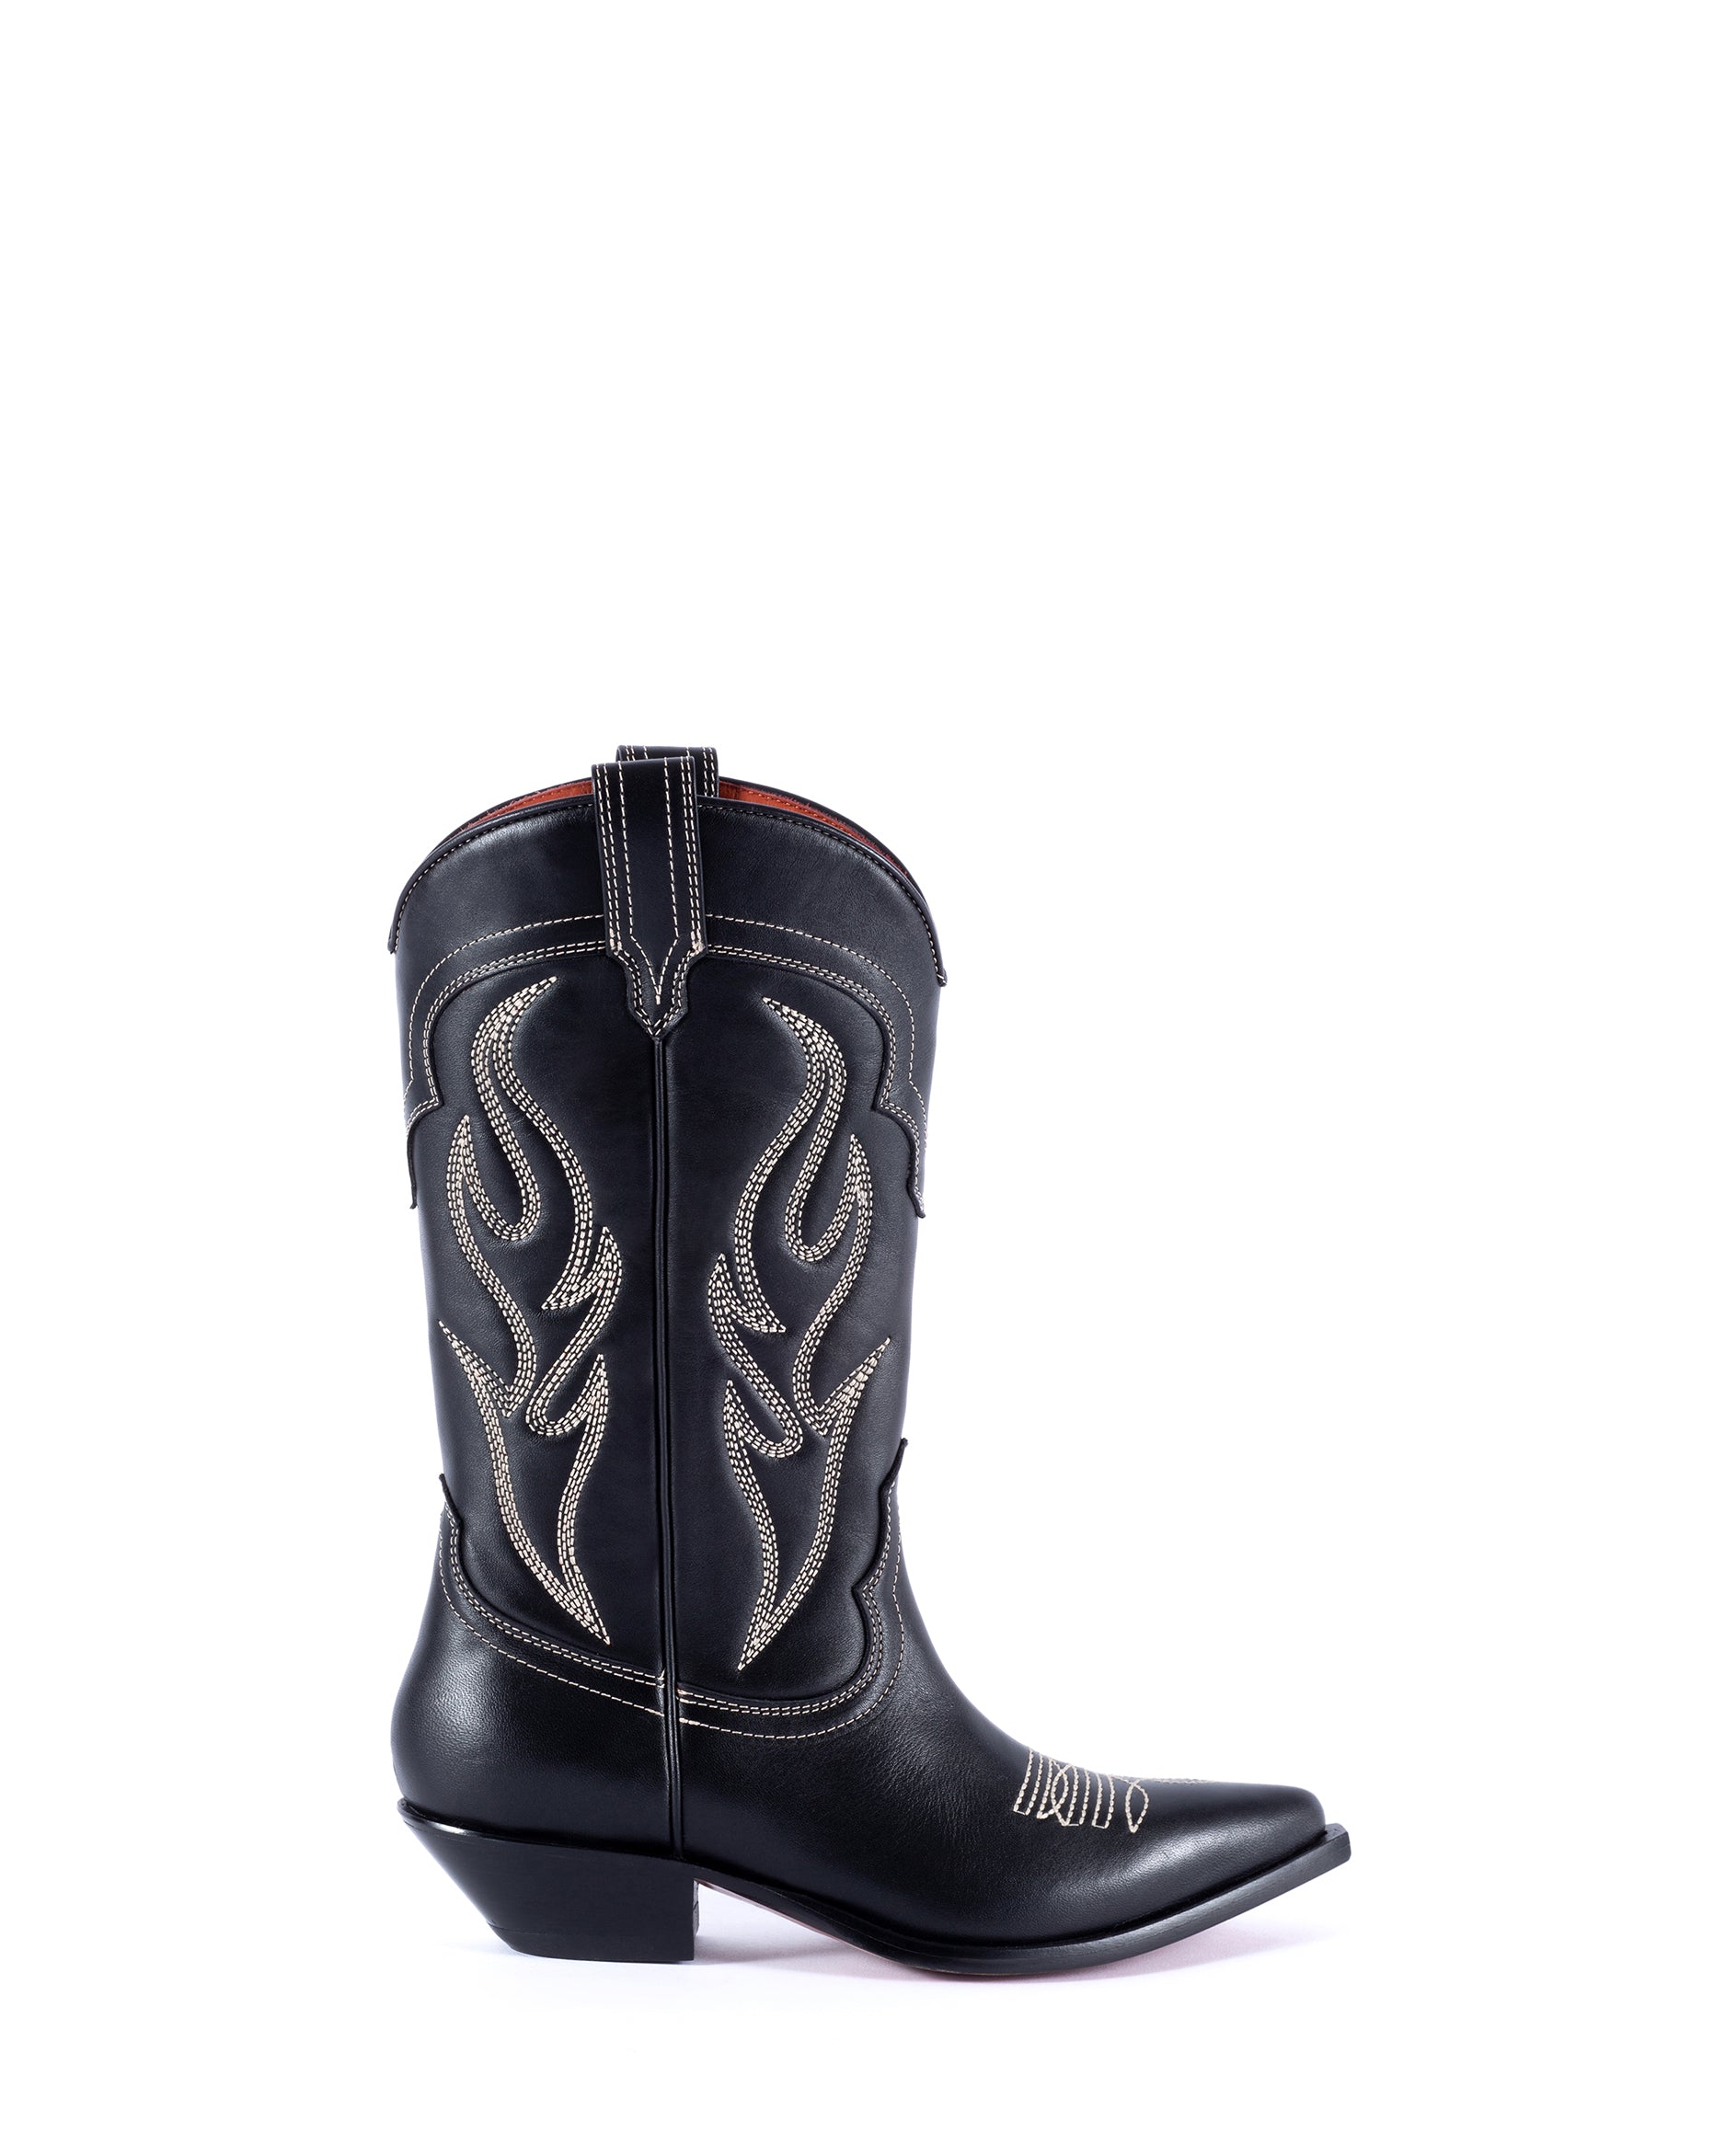 Santa Fe Cowboy Boots